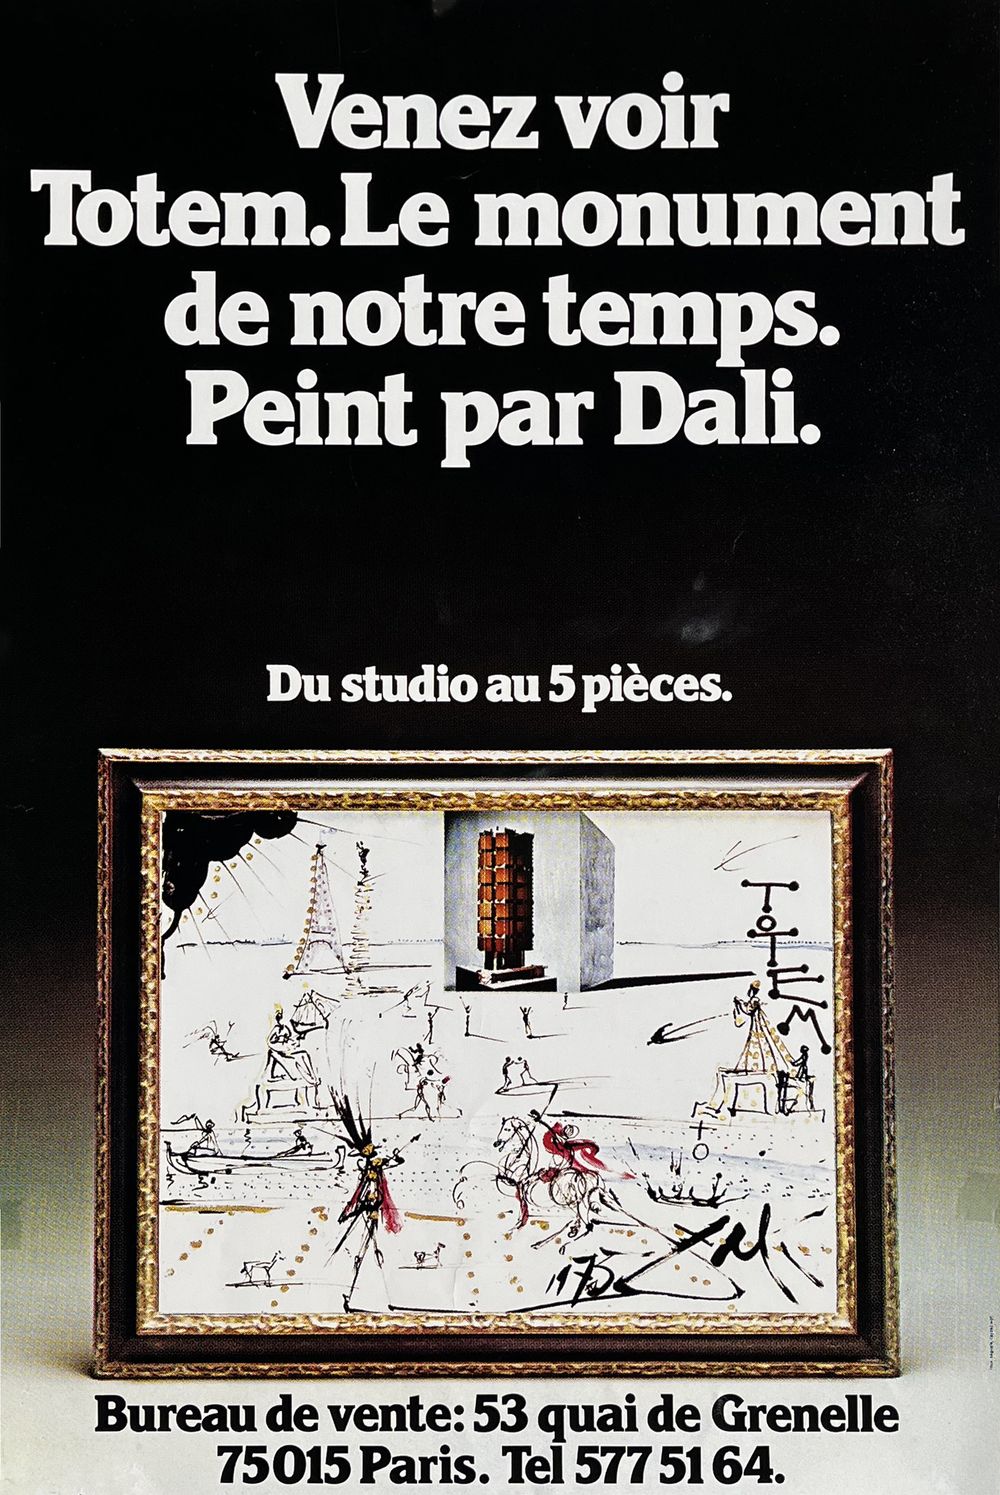 Venez voir Totem - Le monument peint par Dali